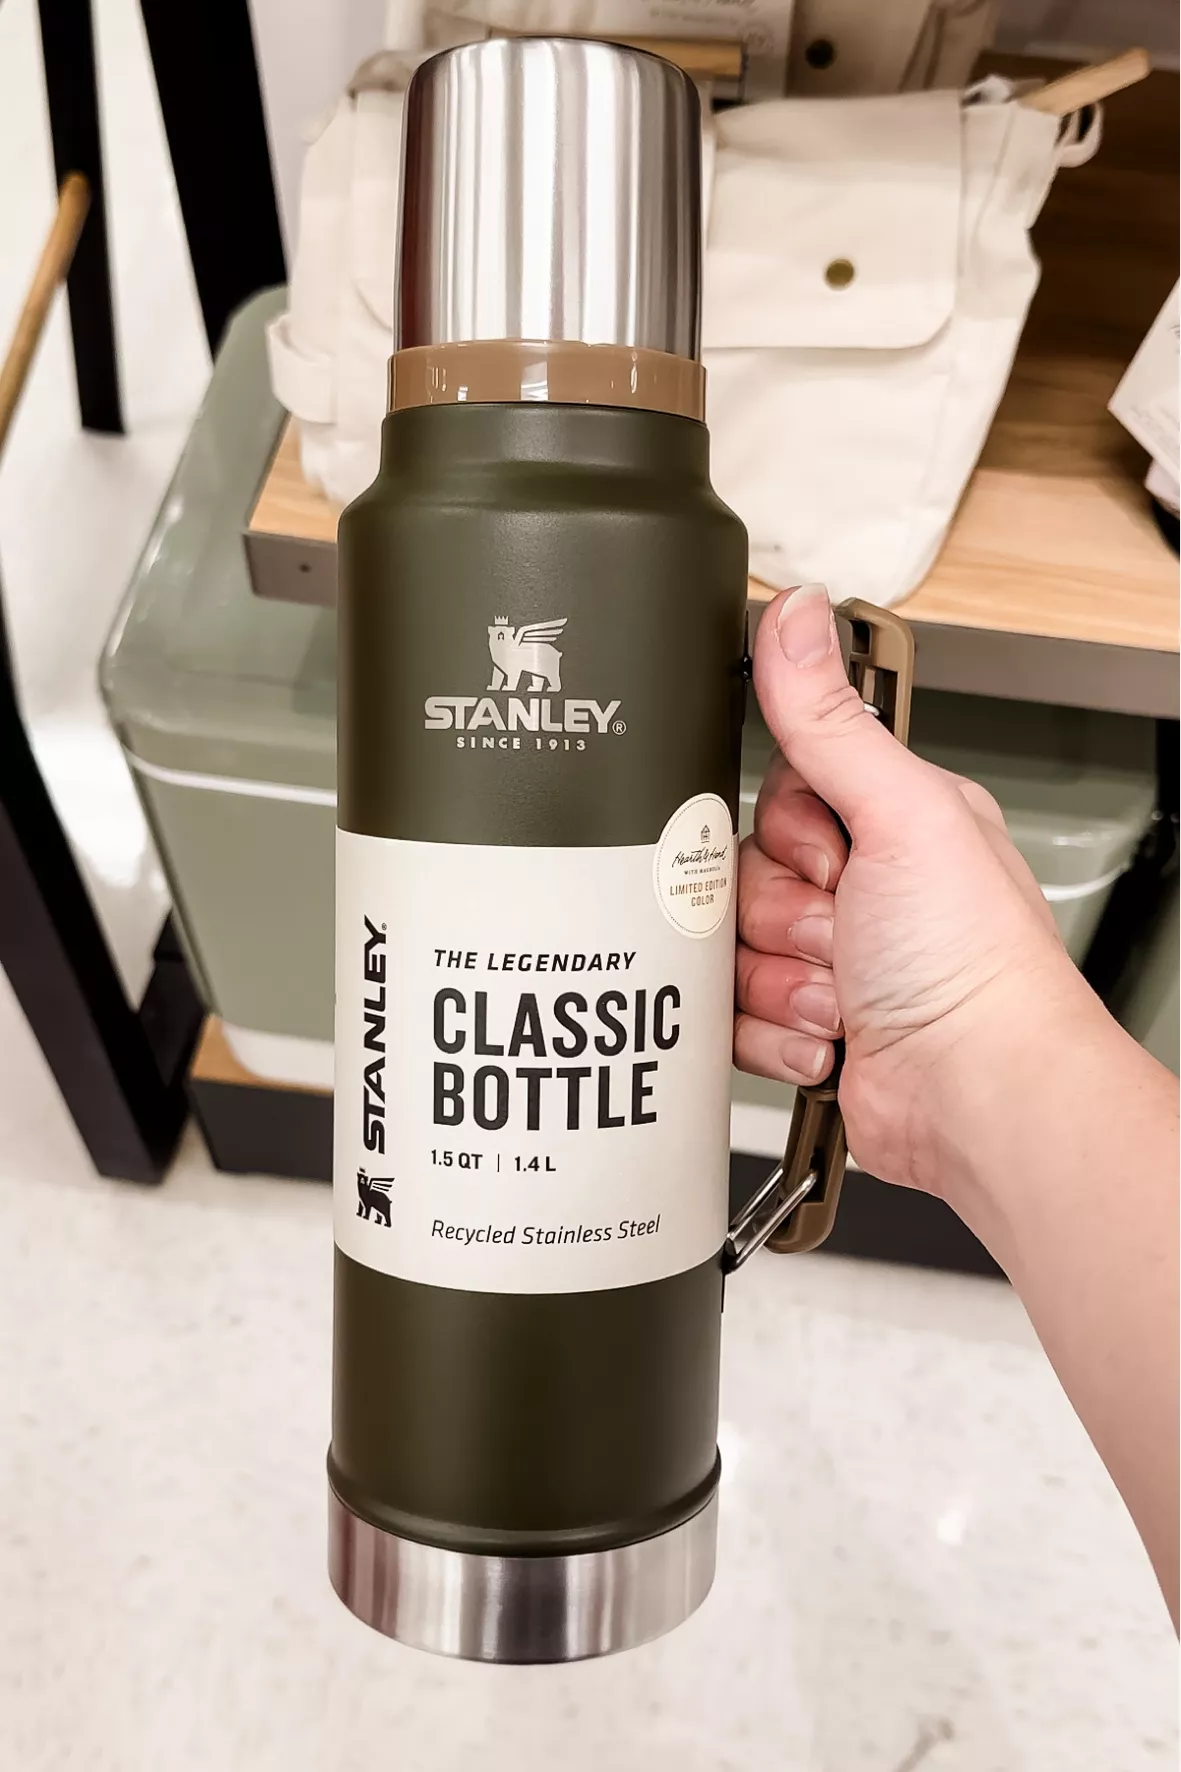 Classic Legendary Bottle, 1.5 QT